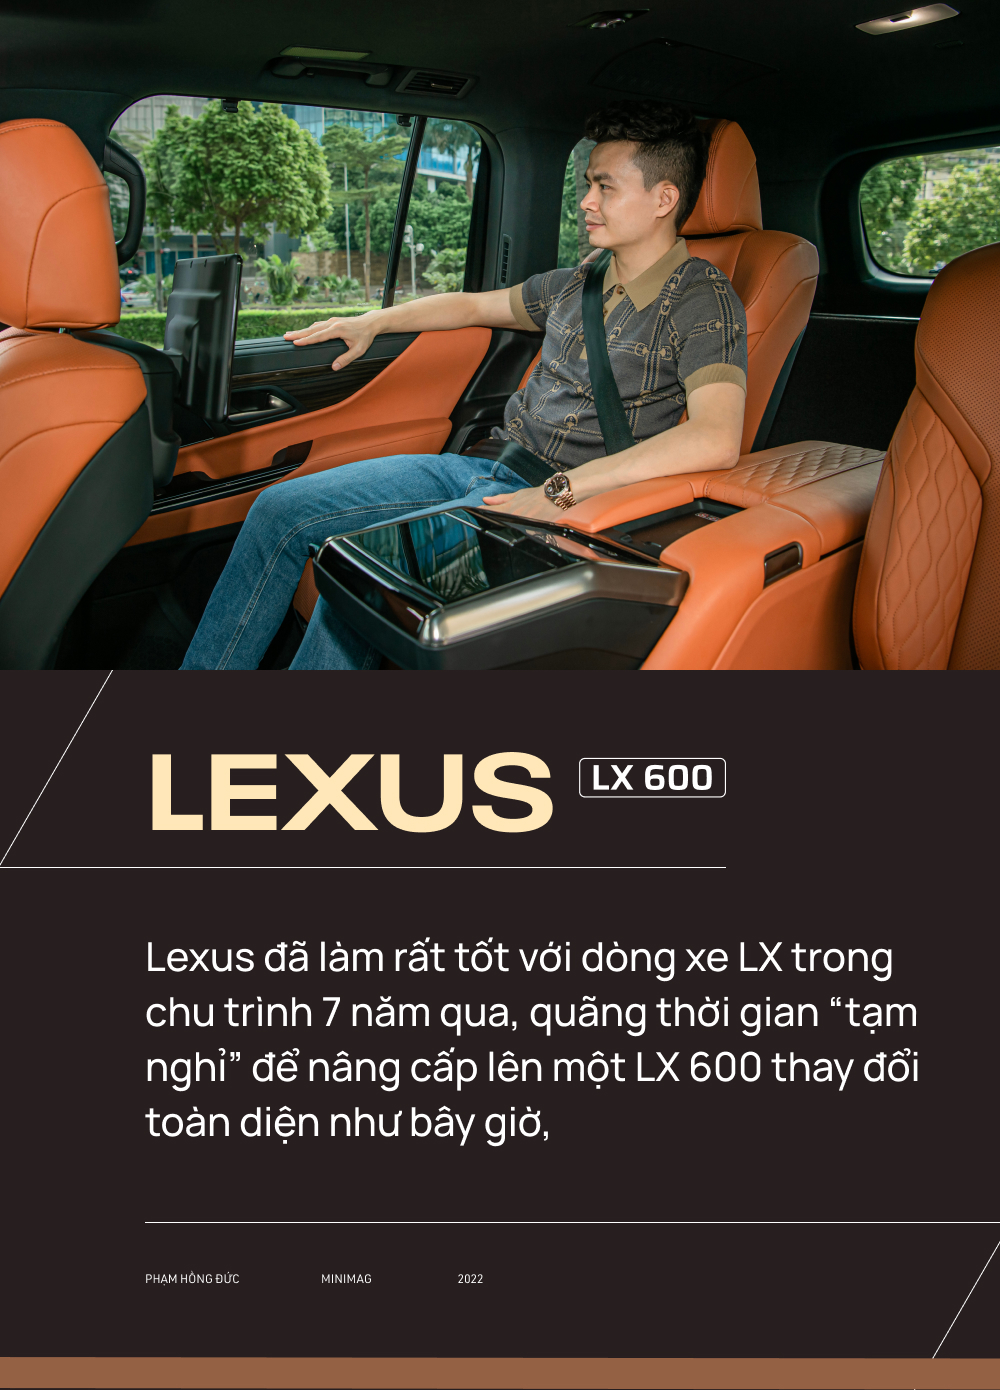 Từ Innova qua 3 đời Lexus, bác sĩ 8X chọn tiếp LX 600: ‘Dùng Lexus rồi khó sang thương hiệu khác’ - Ảnh 20.